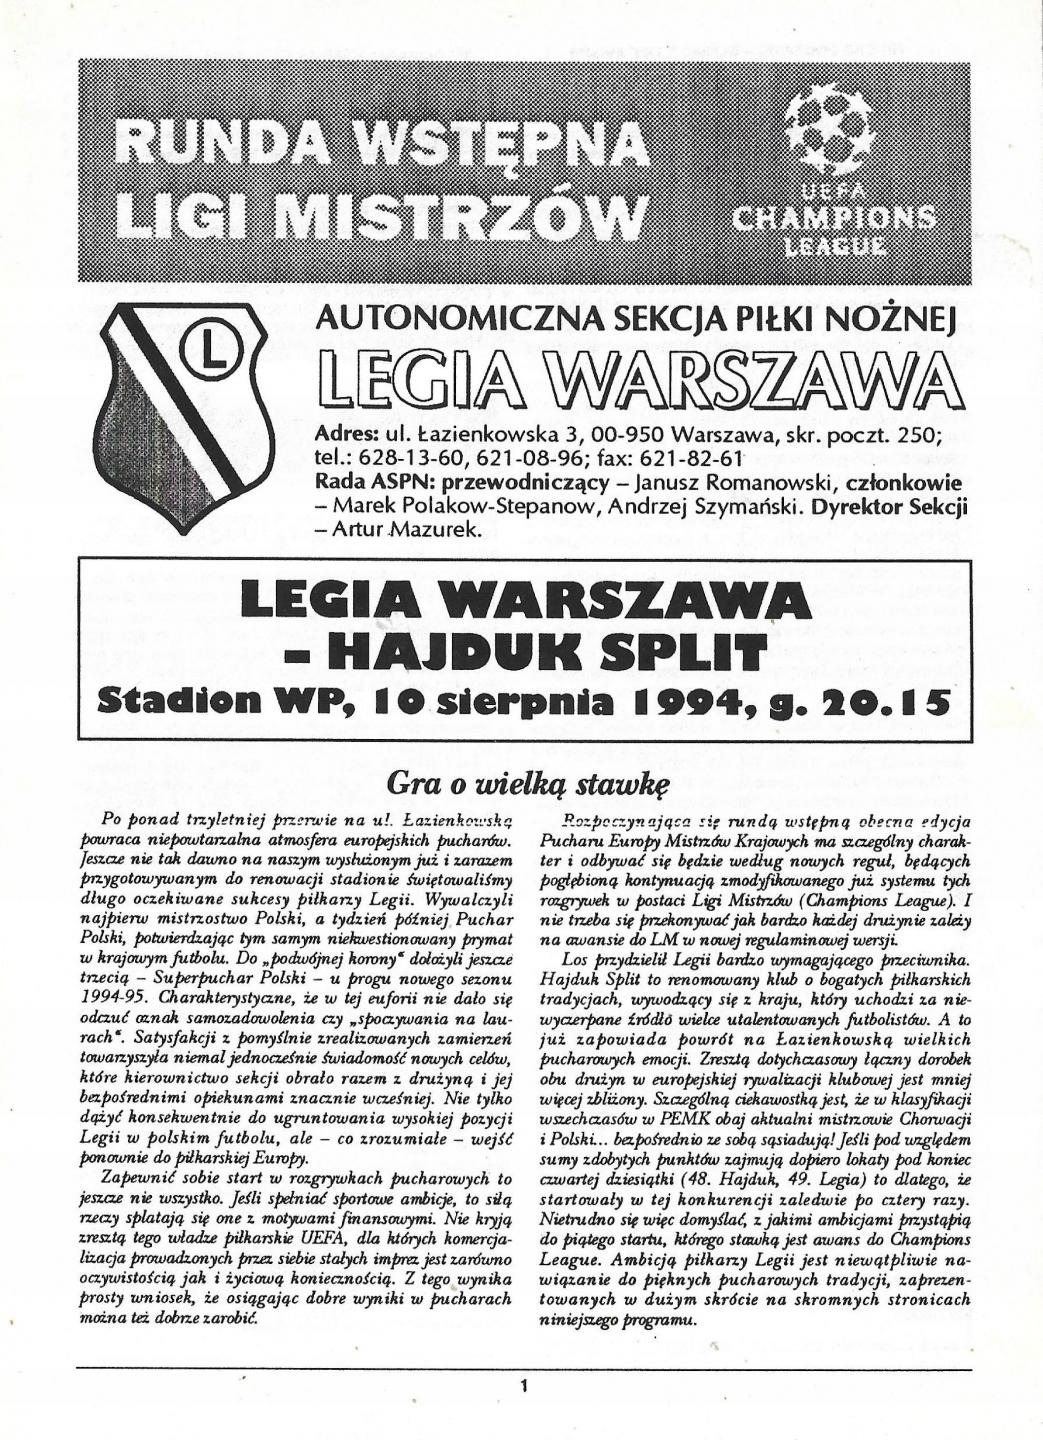 Program meczowy Legia Warszawa - Hajduk Split 0:1 (10.08.1994)